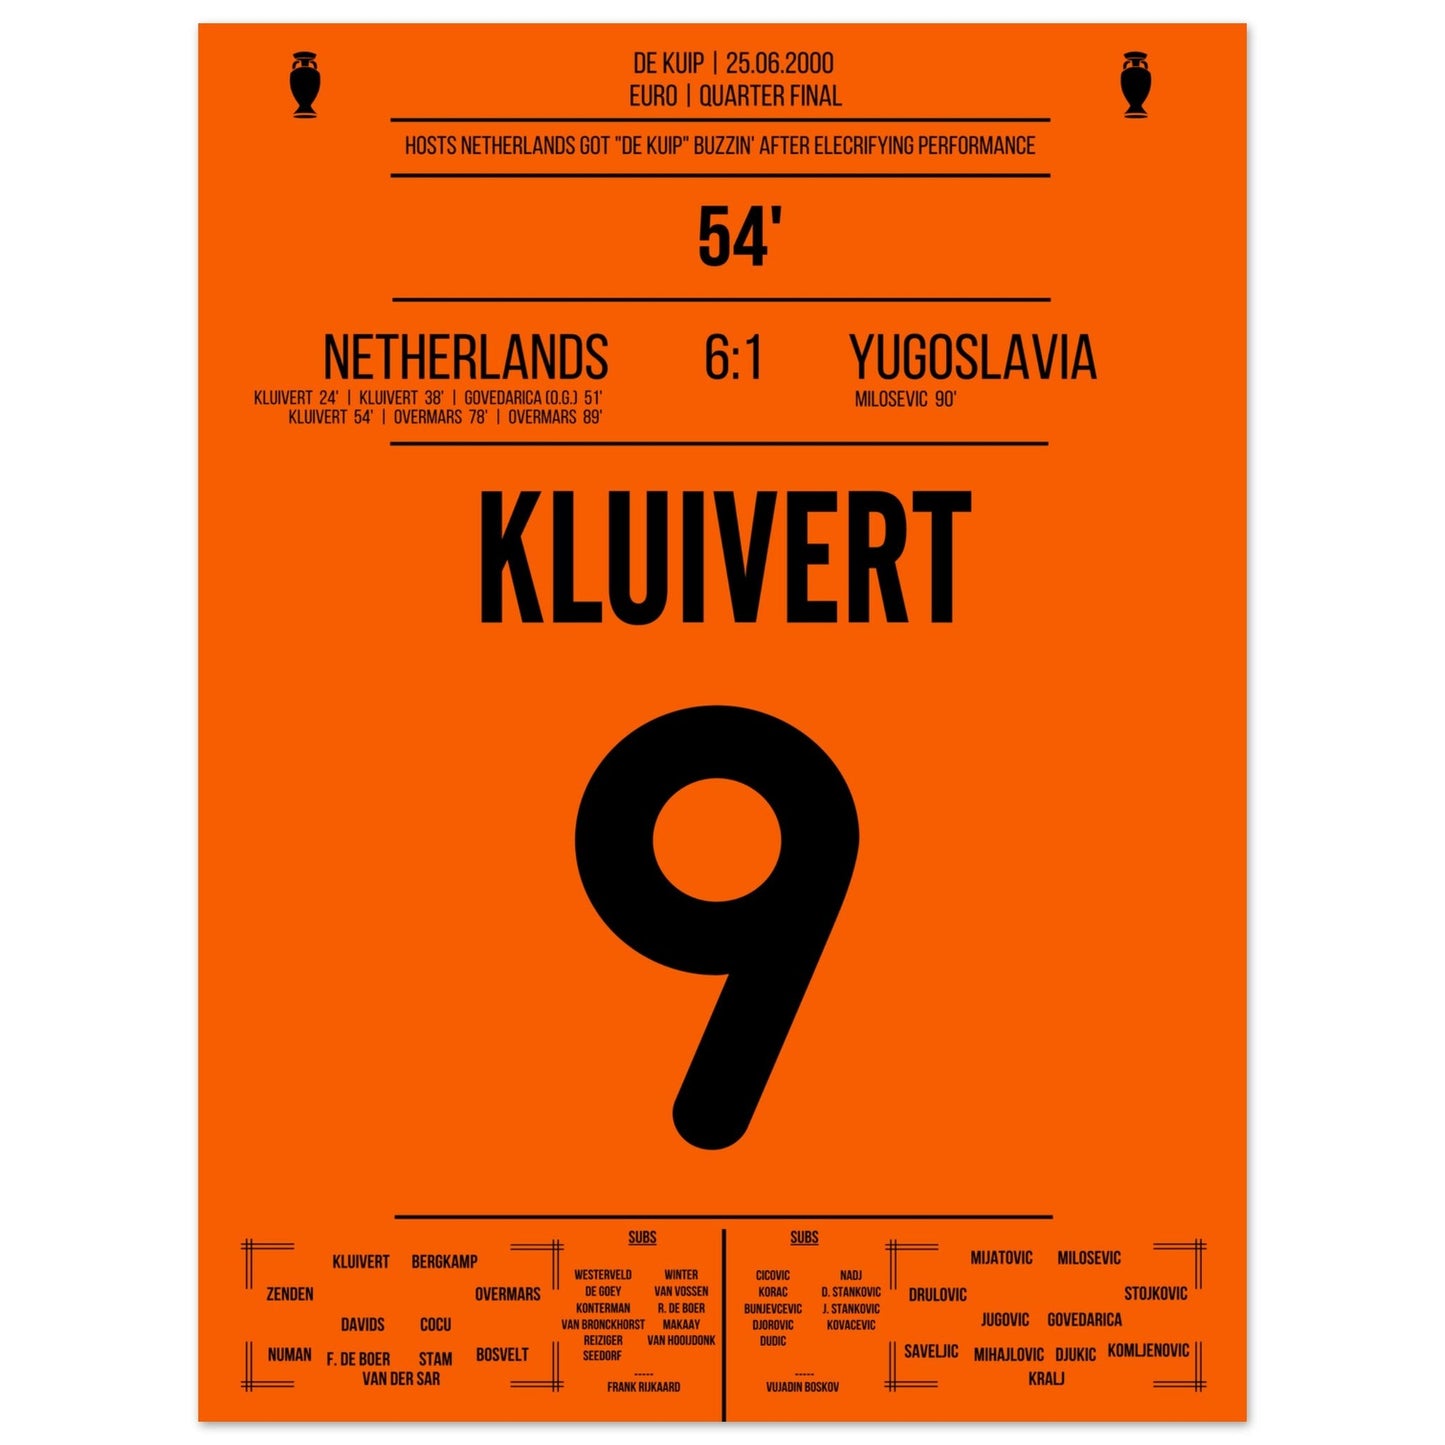 Le triplé de Kluivert en quarts de finale de l'Euro 2000